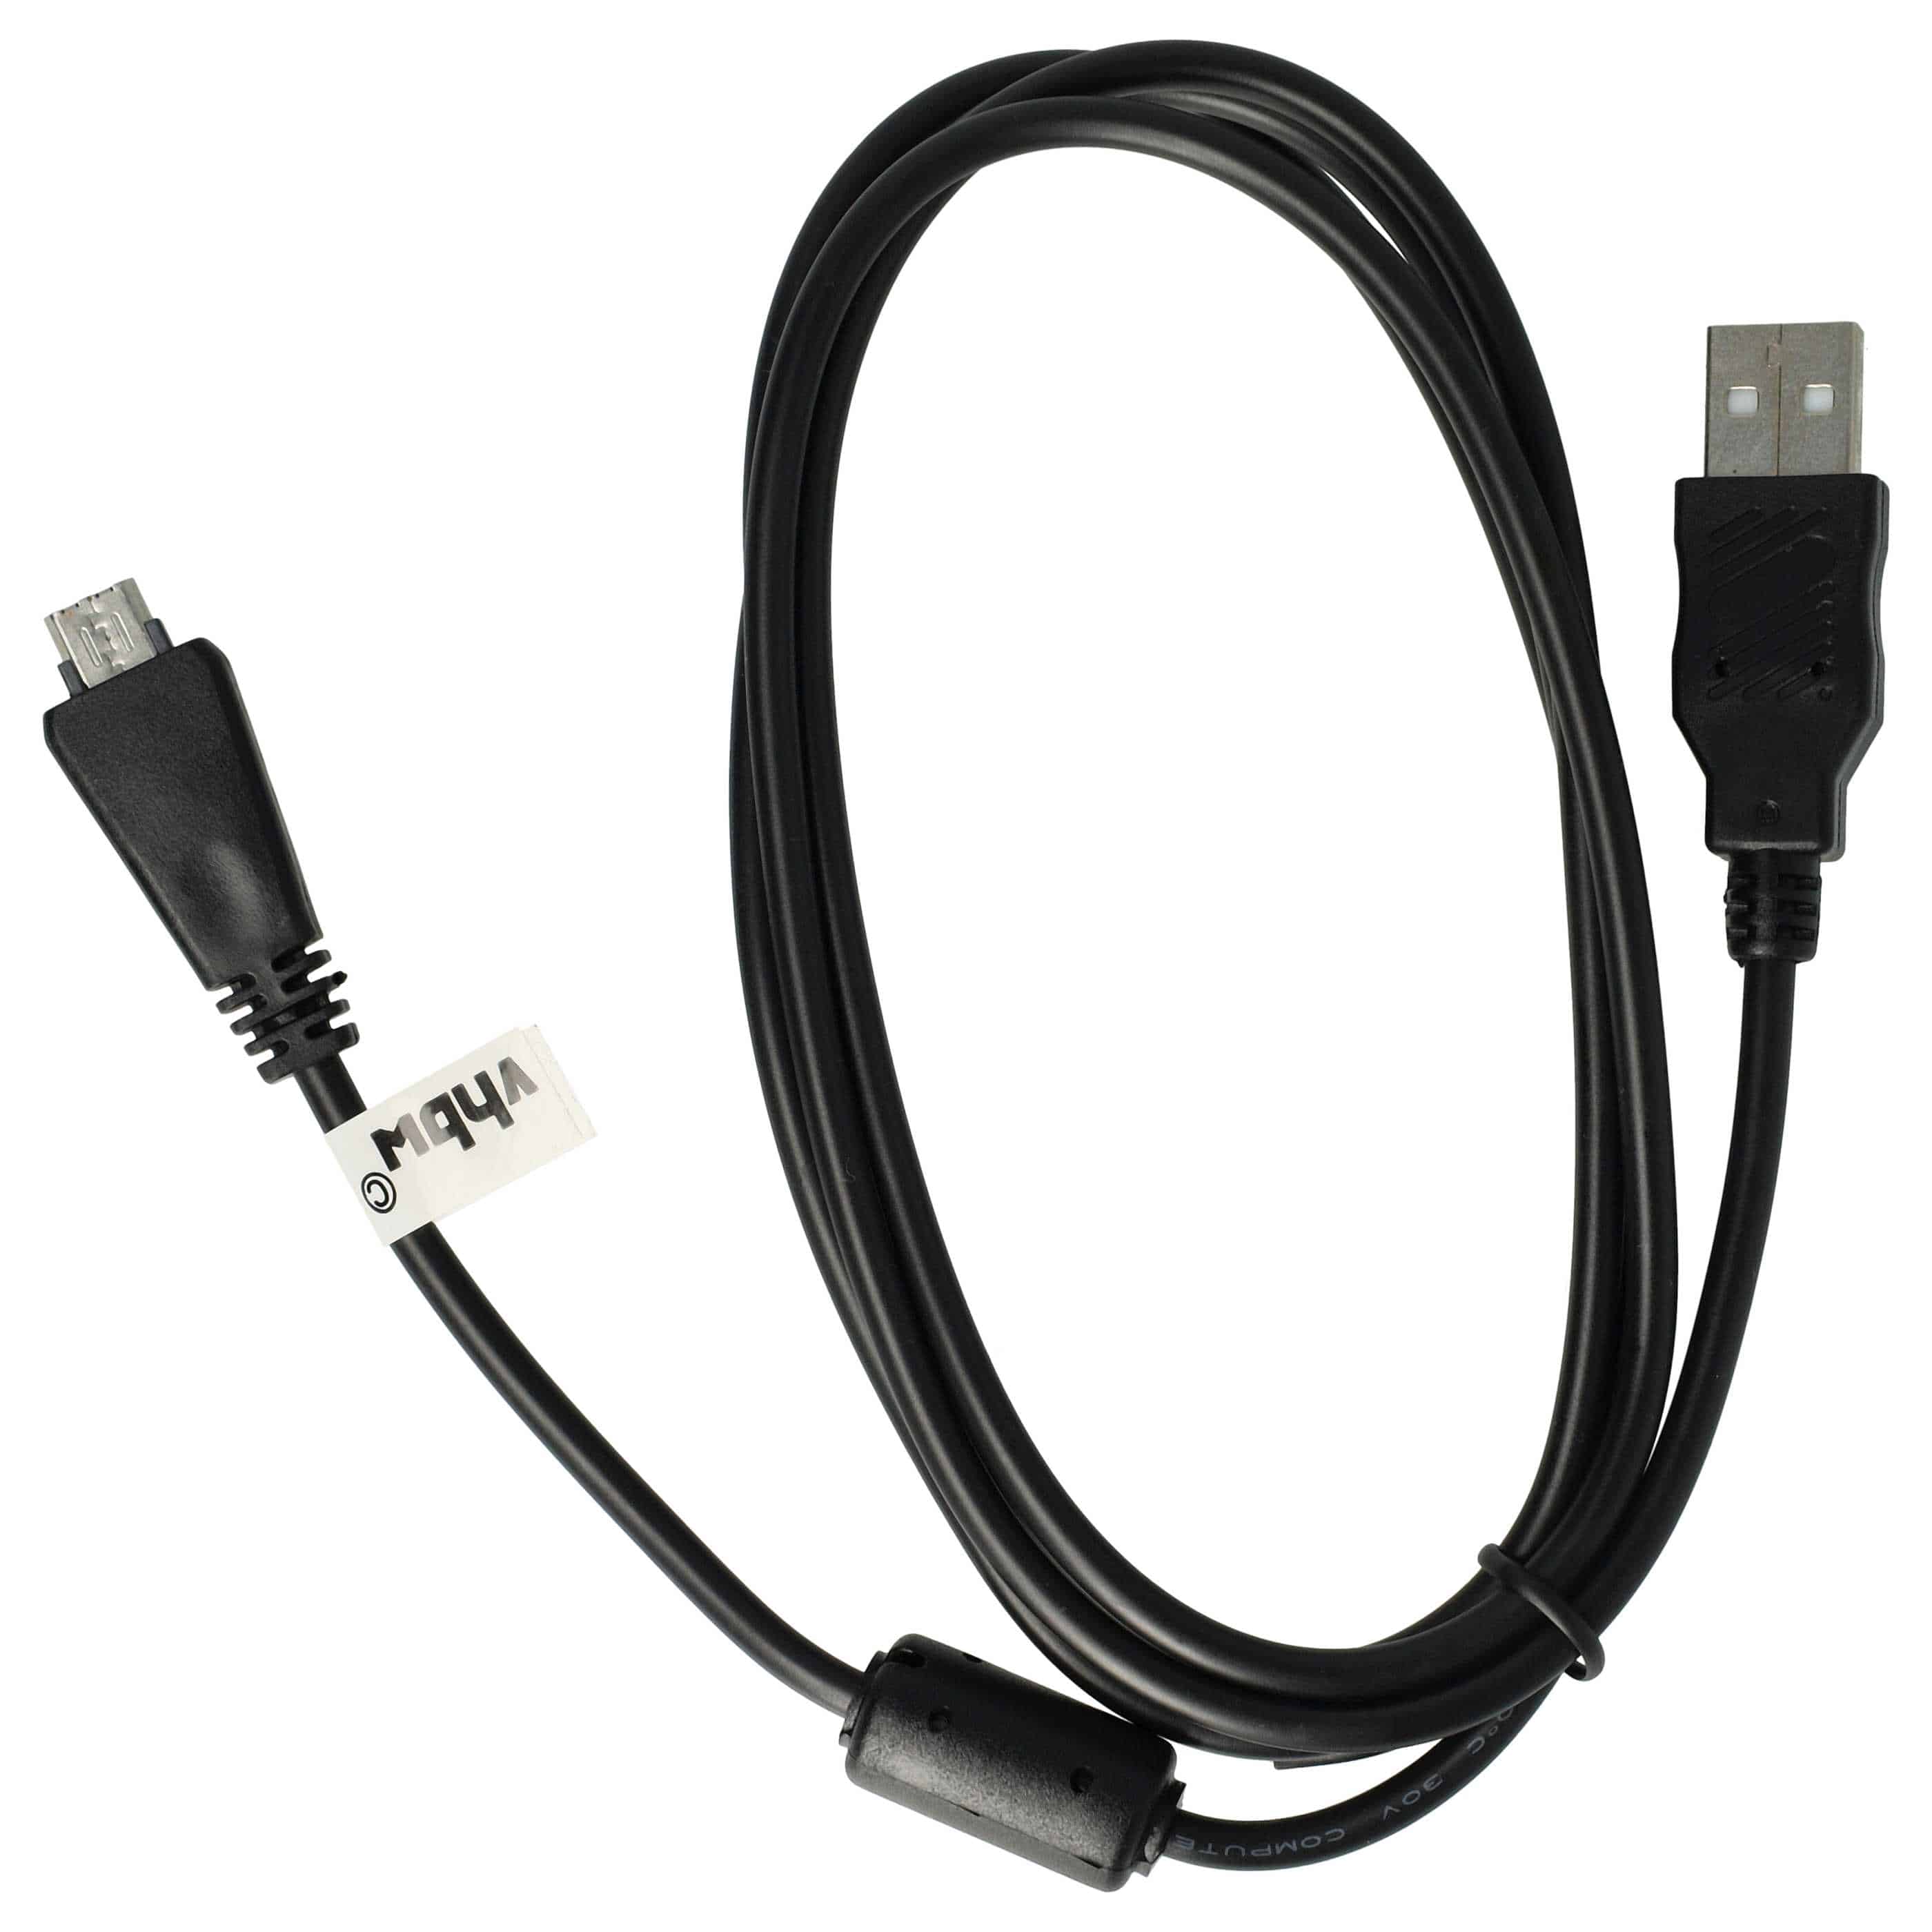 Cavo dati USB sostituisce Sony VMC-MD3 (senza funzione AV) per fotocamera, camcorder Sony - 150 cm